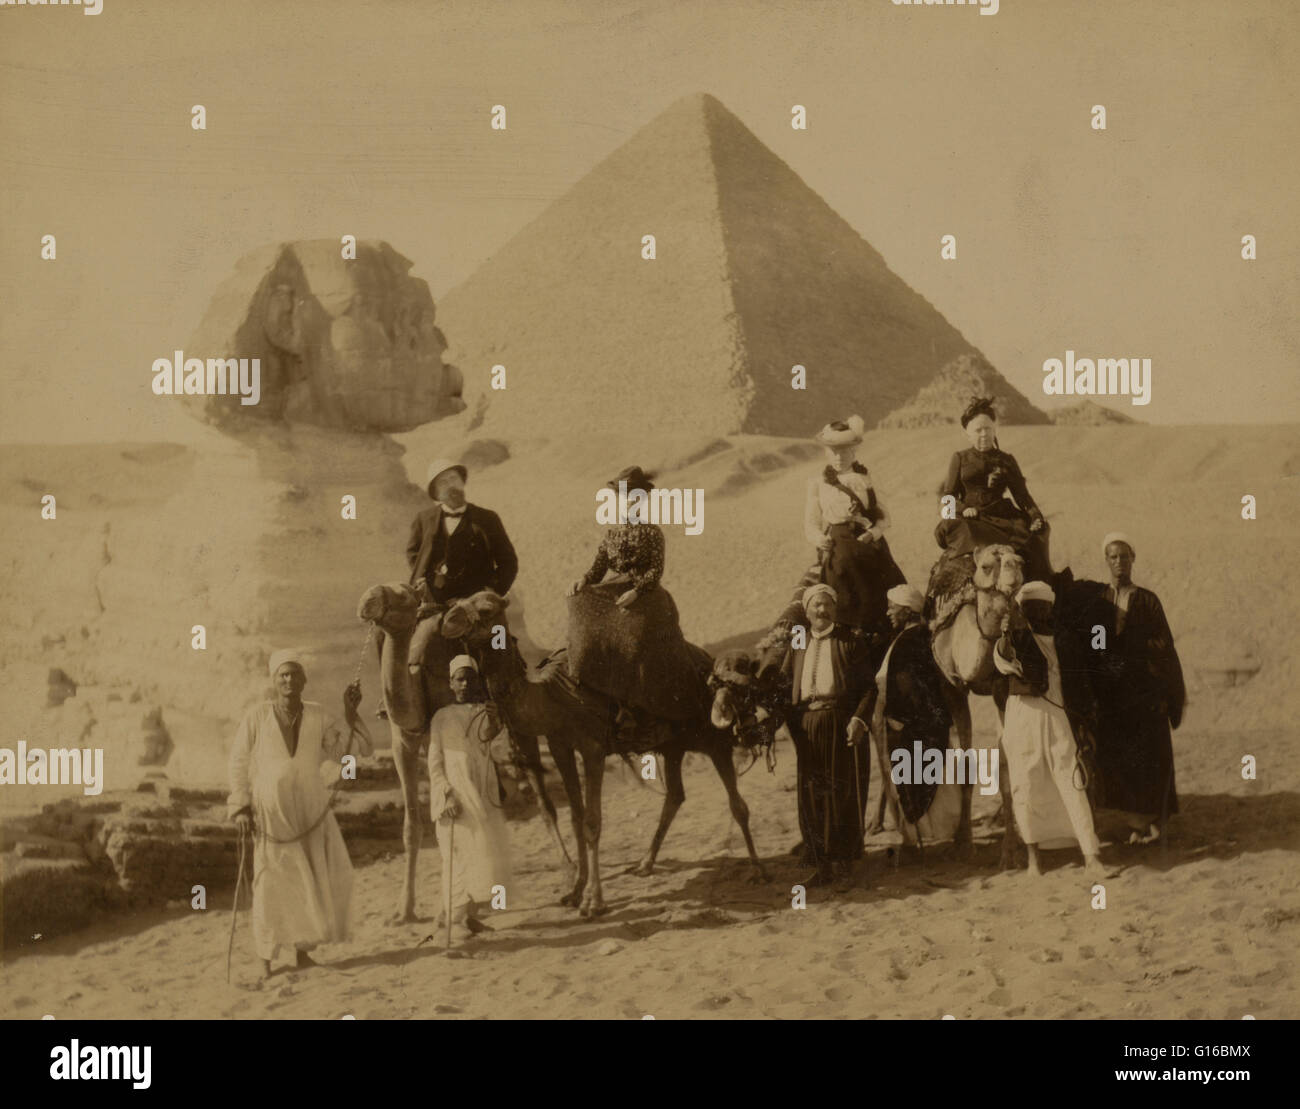 Titulado: "Tres mujeres y un hombre en traje occidental, asentado en camellos, varios locales de los hombres delante de los camellos llevando las riendas, una pirámide y la Esfinge en el fondo". La Necrópolis de Giza (las pirámides de Giza) es un sitio arqueológico en la meseta de Giza Foto de stock